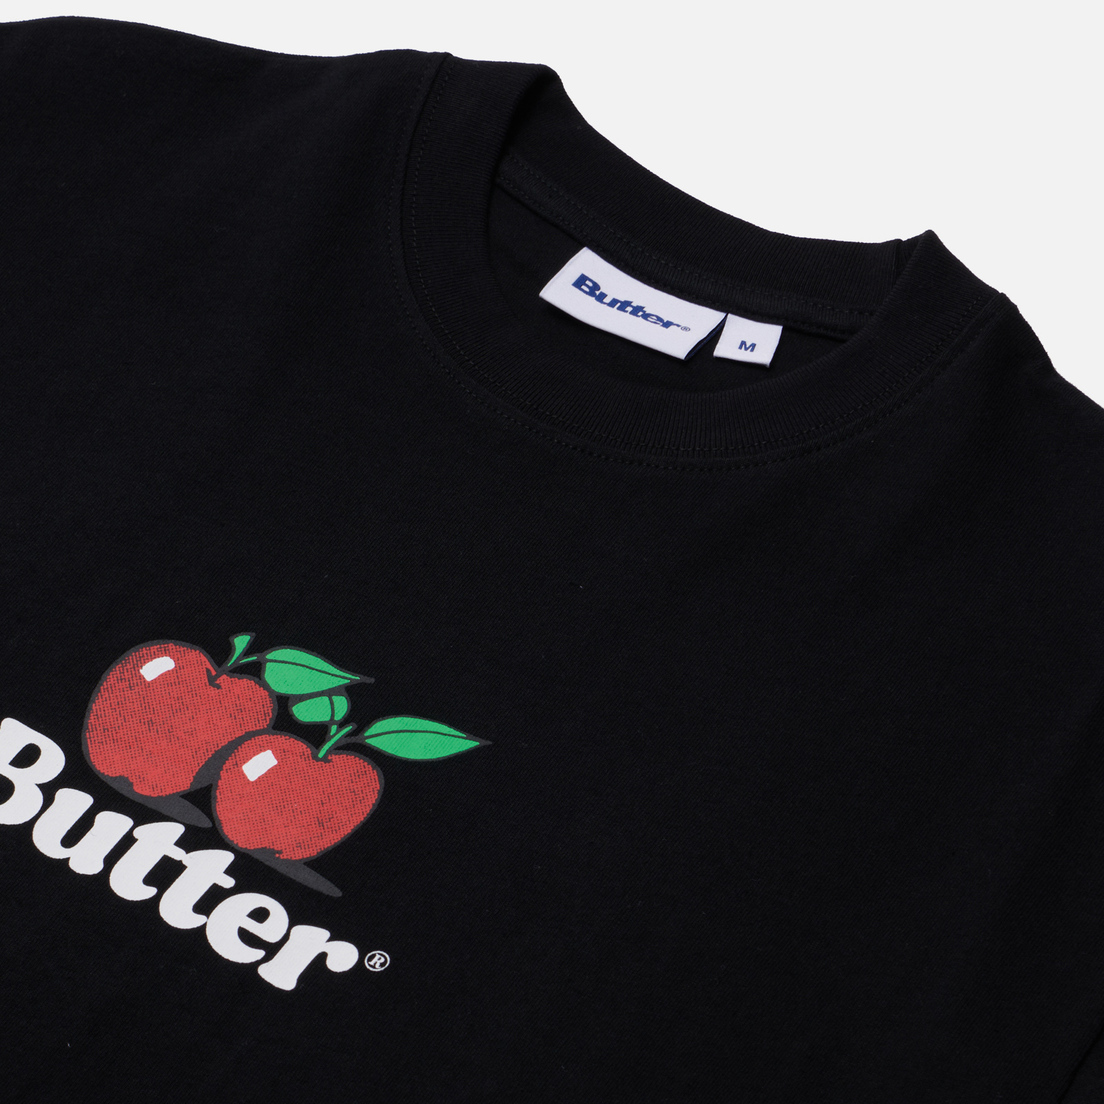 Butter Goods Мужская футболка Apples Logo